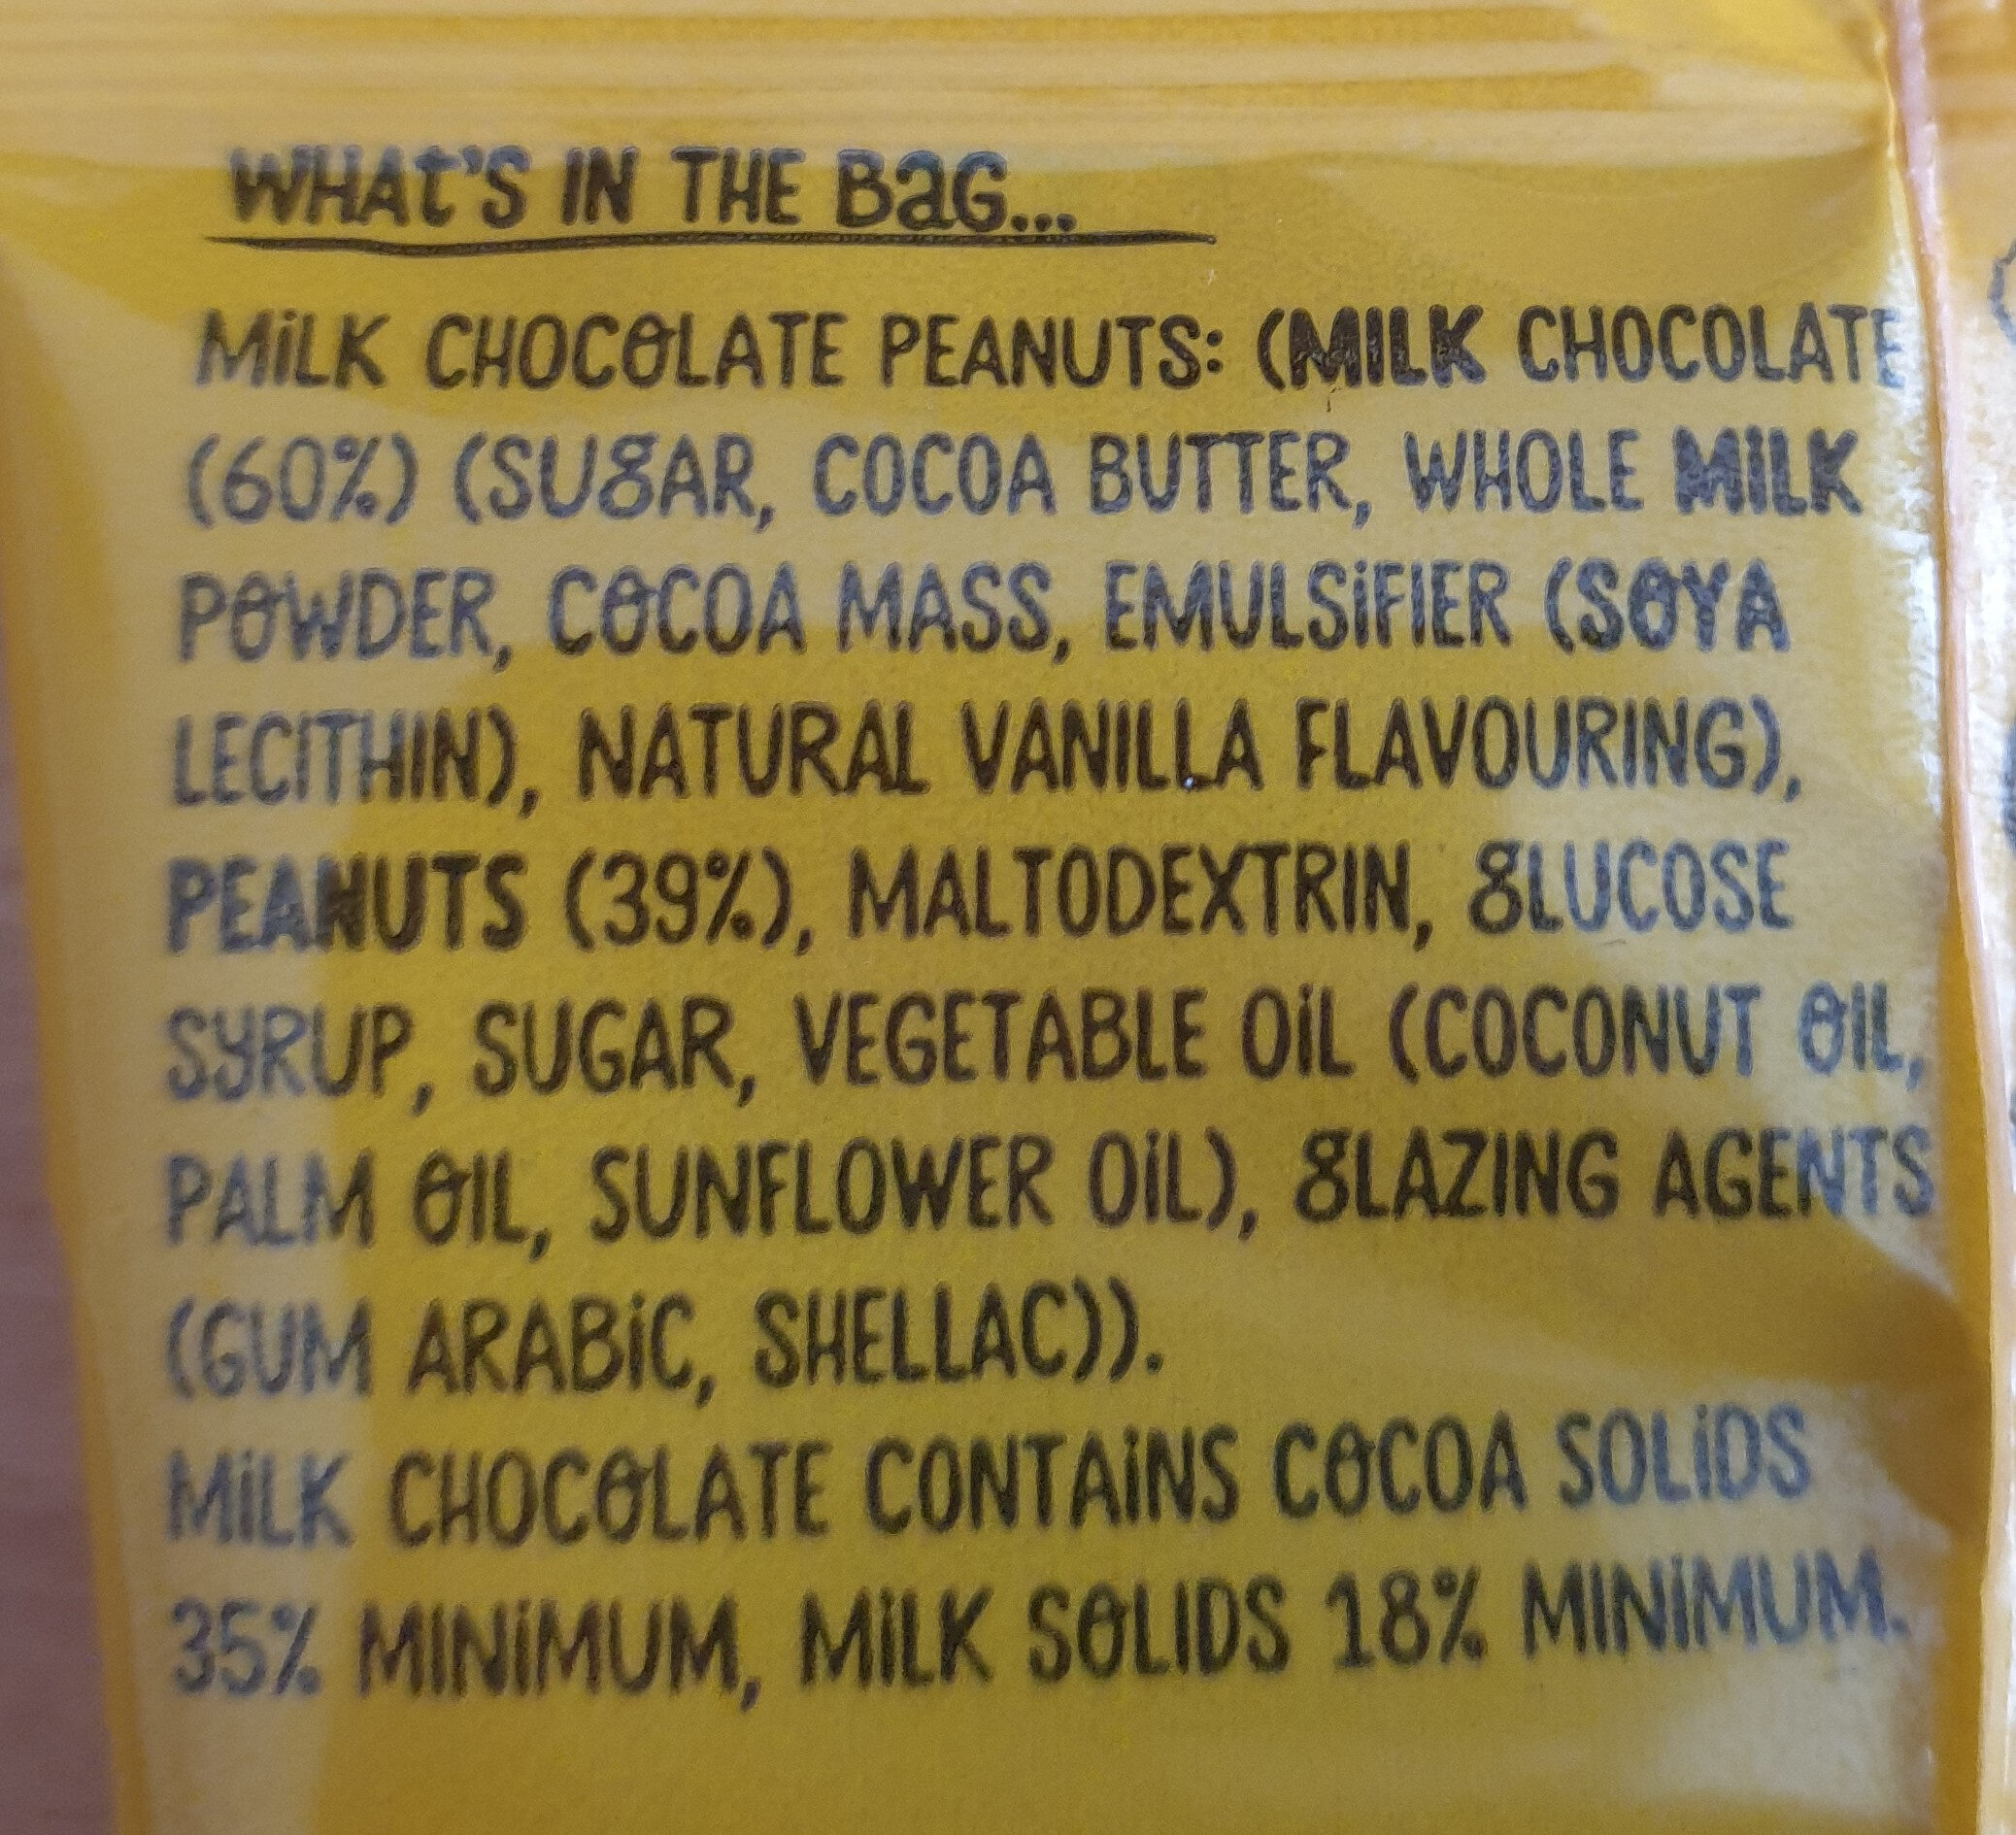 Milk chocolate peanuts - Ingredients